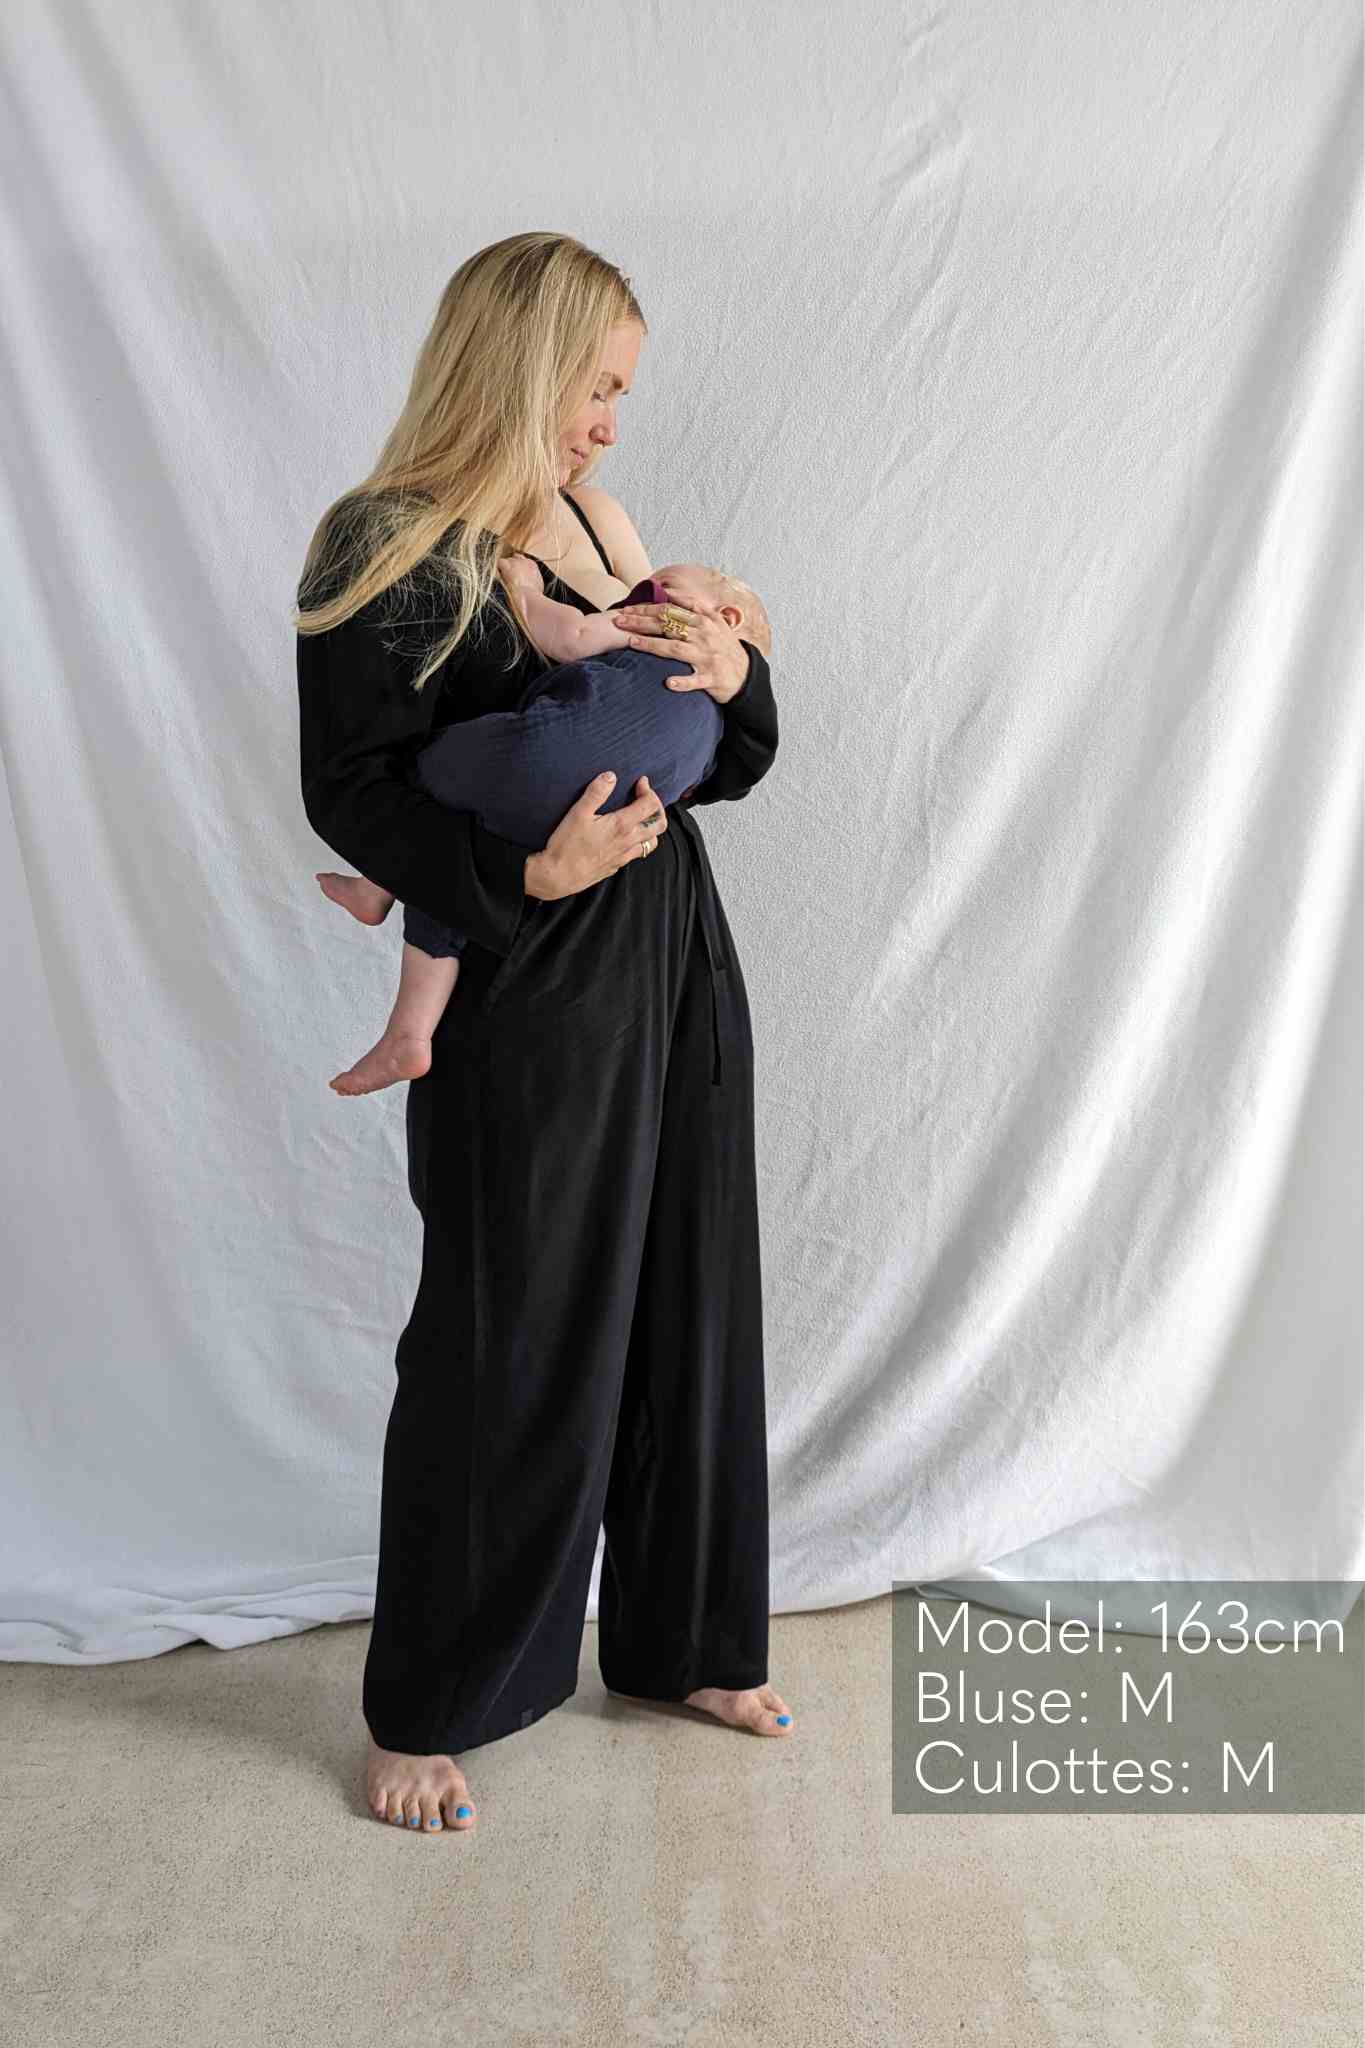 Frau in schwarzer Hode und Bluse trägt Baby auf dem Arm.